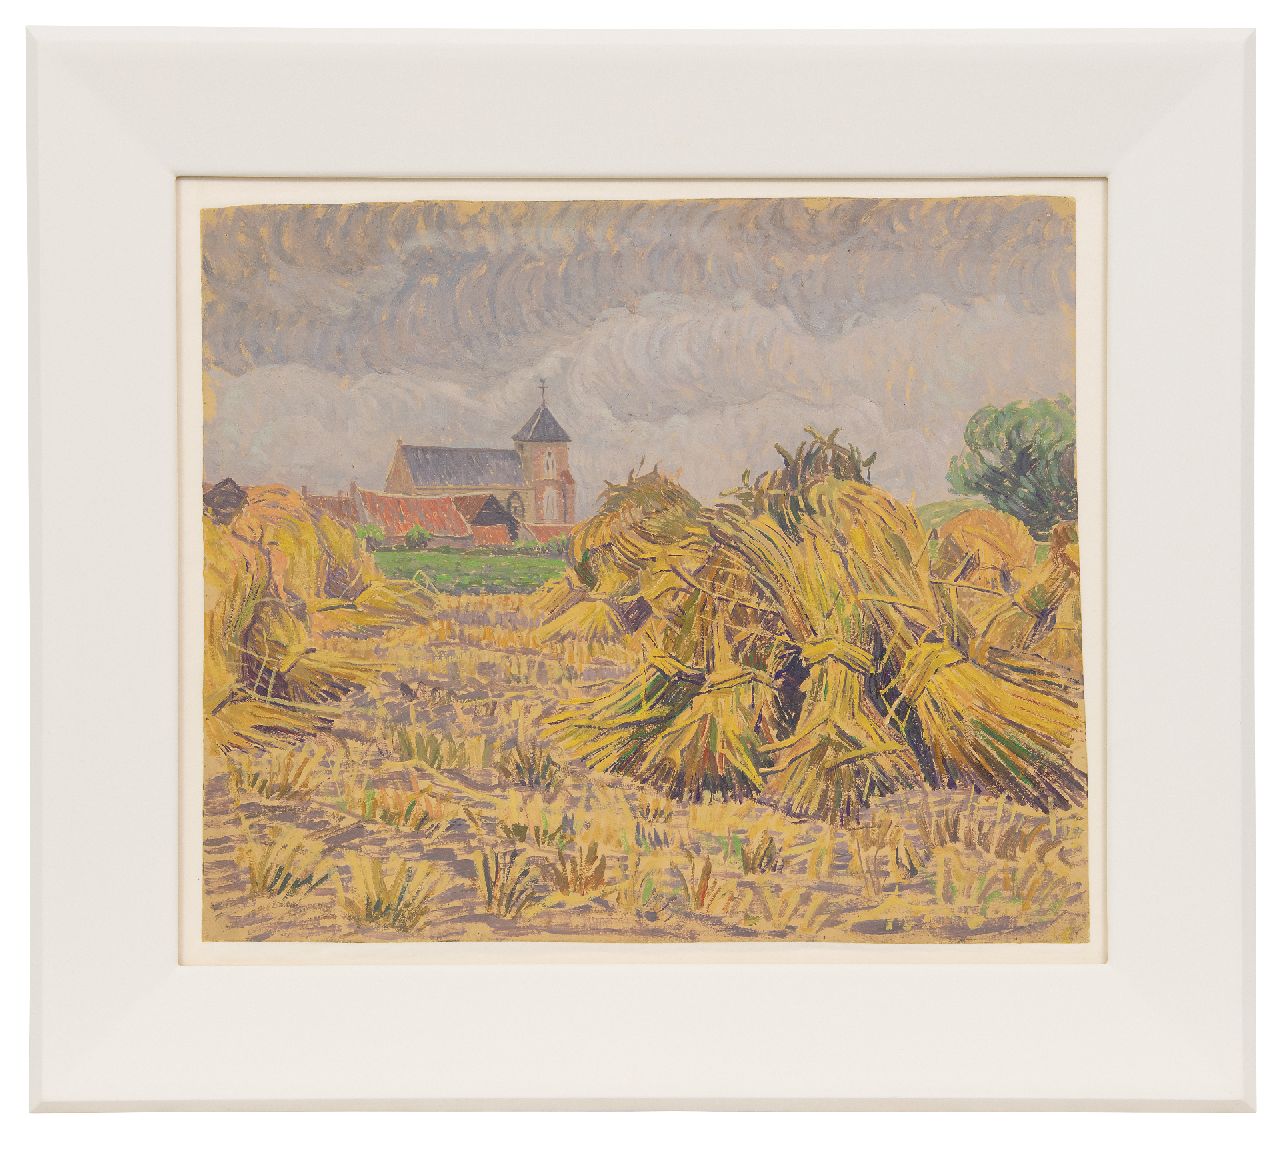 Pijpers E.E.  | 'Edith' Elizabeth Pijpers | Gemälde zum Verkauf angeboten | Dorfkirche zwischen Feld mit Garben Mais, Öl auf Papier 38,1 x 48,5 cm